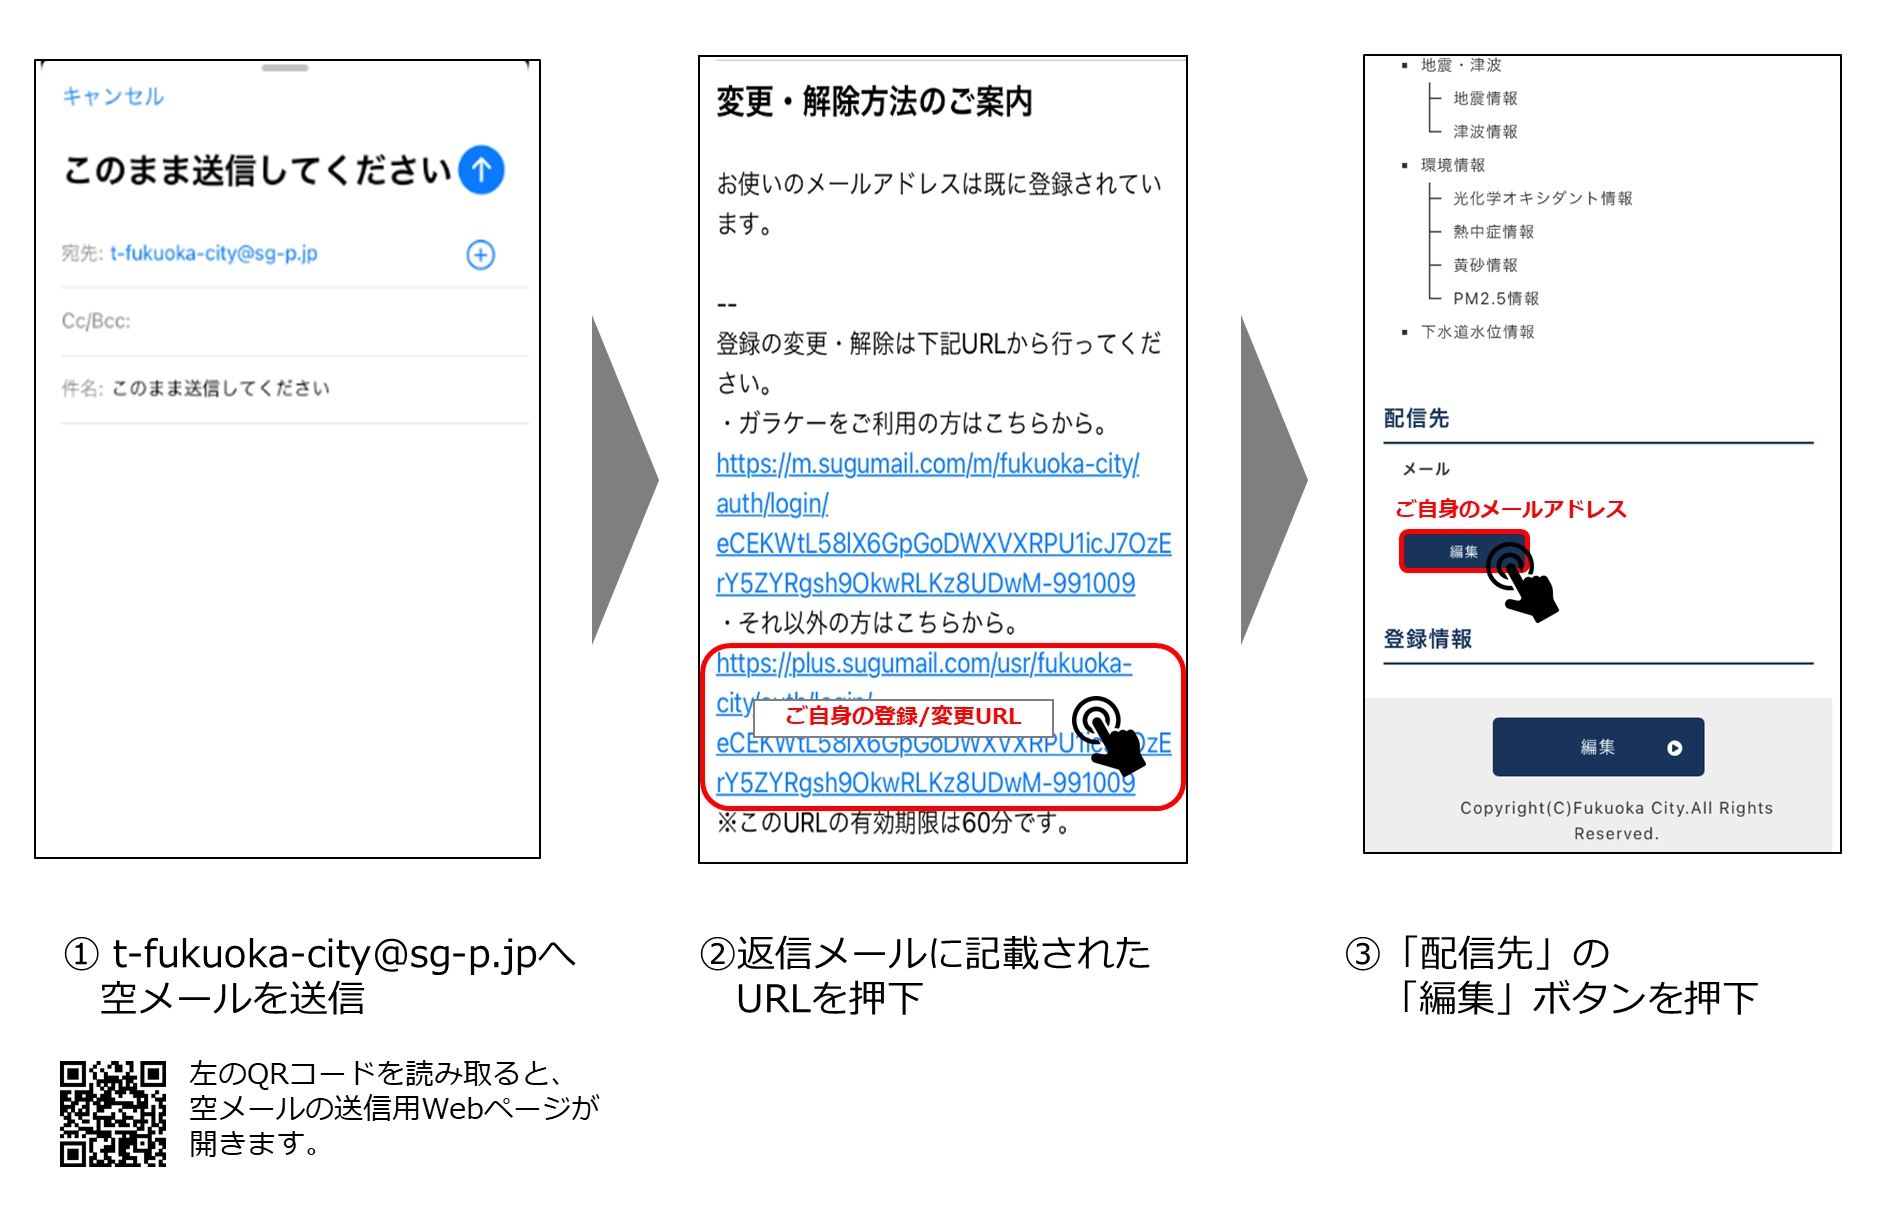 防災メールのメールアドレス変更イメージ,1 t-fukuoka-city@sg-p.jpへ空メールを送信,2 返信メールに記載されたURLを押下,3 「配信先」の「編集」ボタンを押下